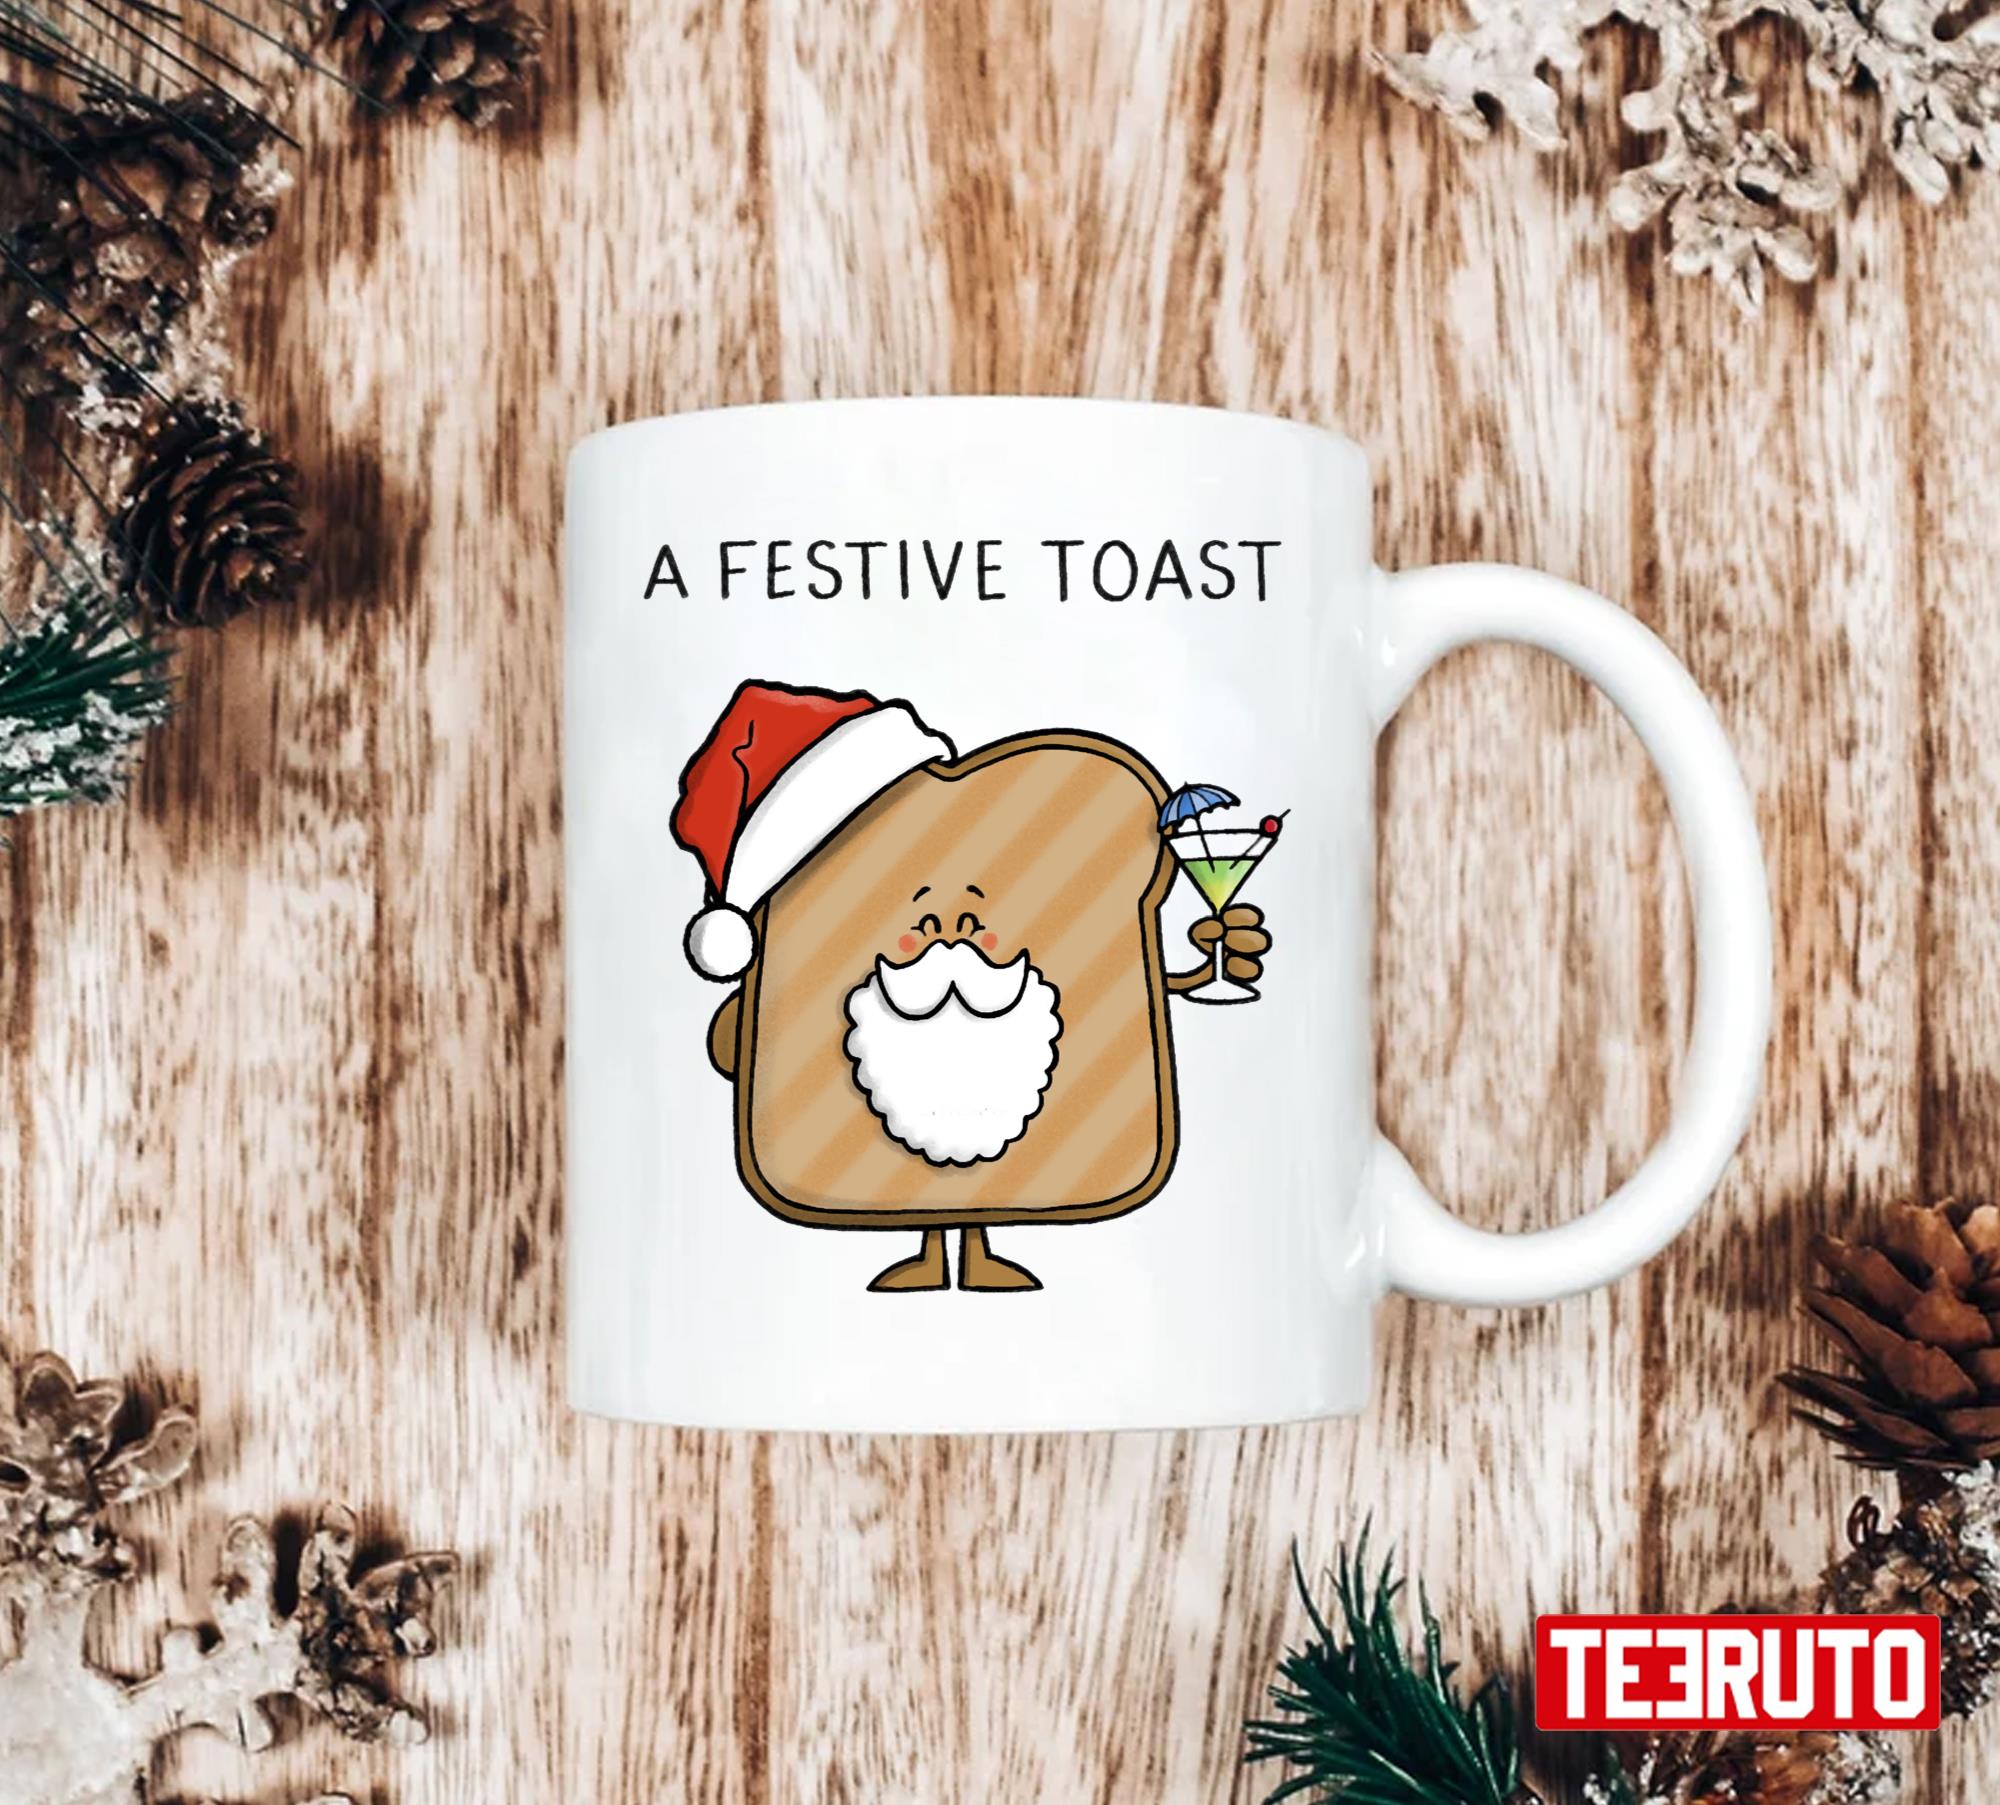 Festive Toast Christmas Unisex Sweatshirt